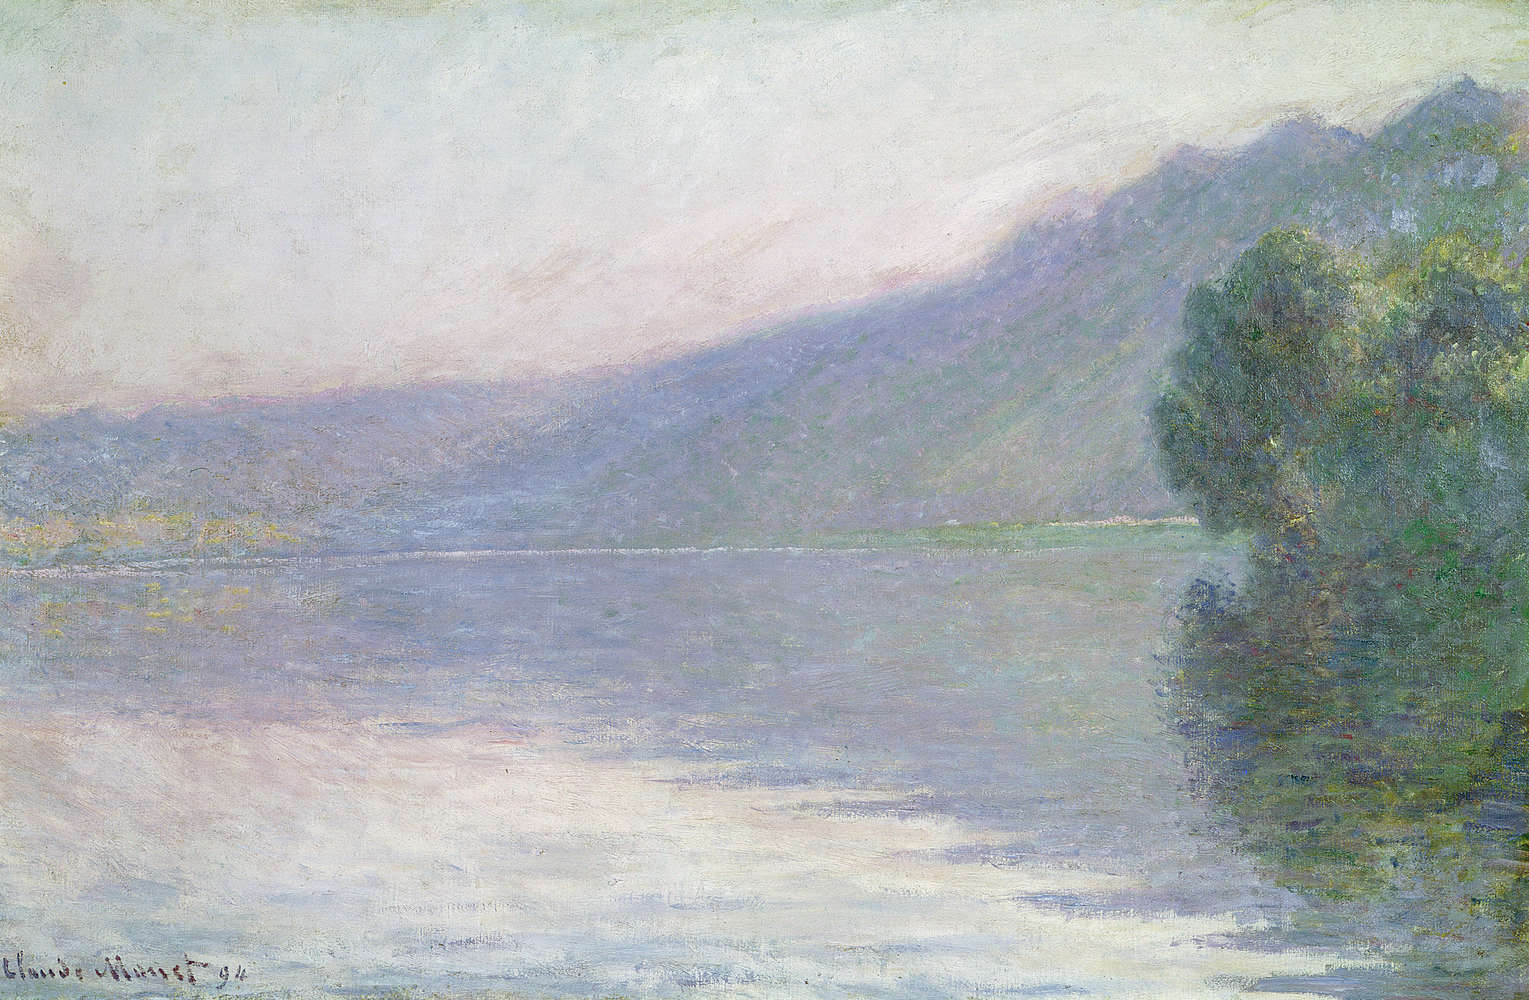             Papier peint panoramique "La Seine à PortVillez" de Claude Monet
        